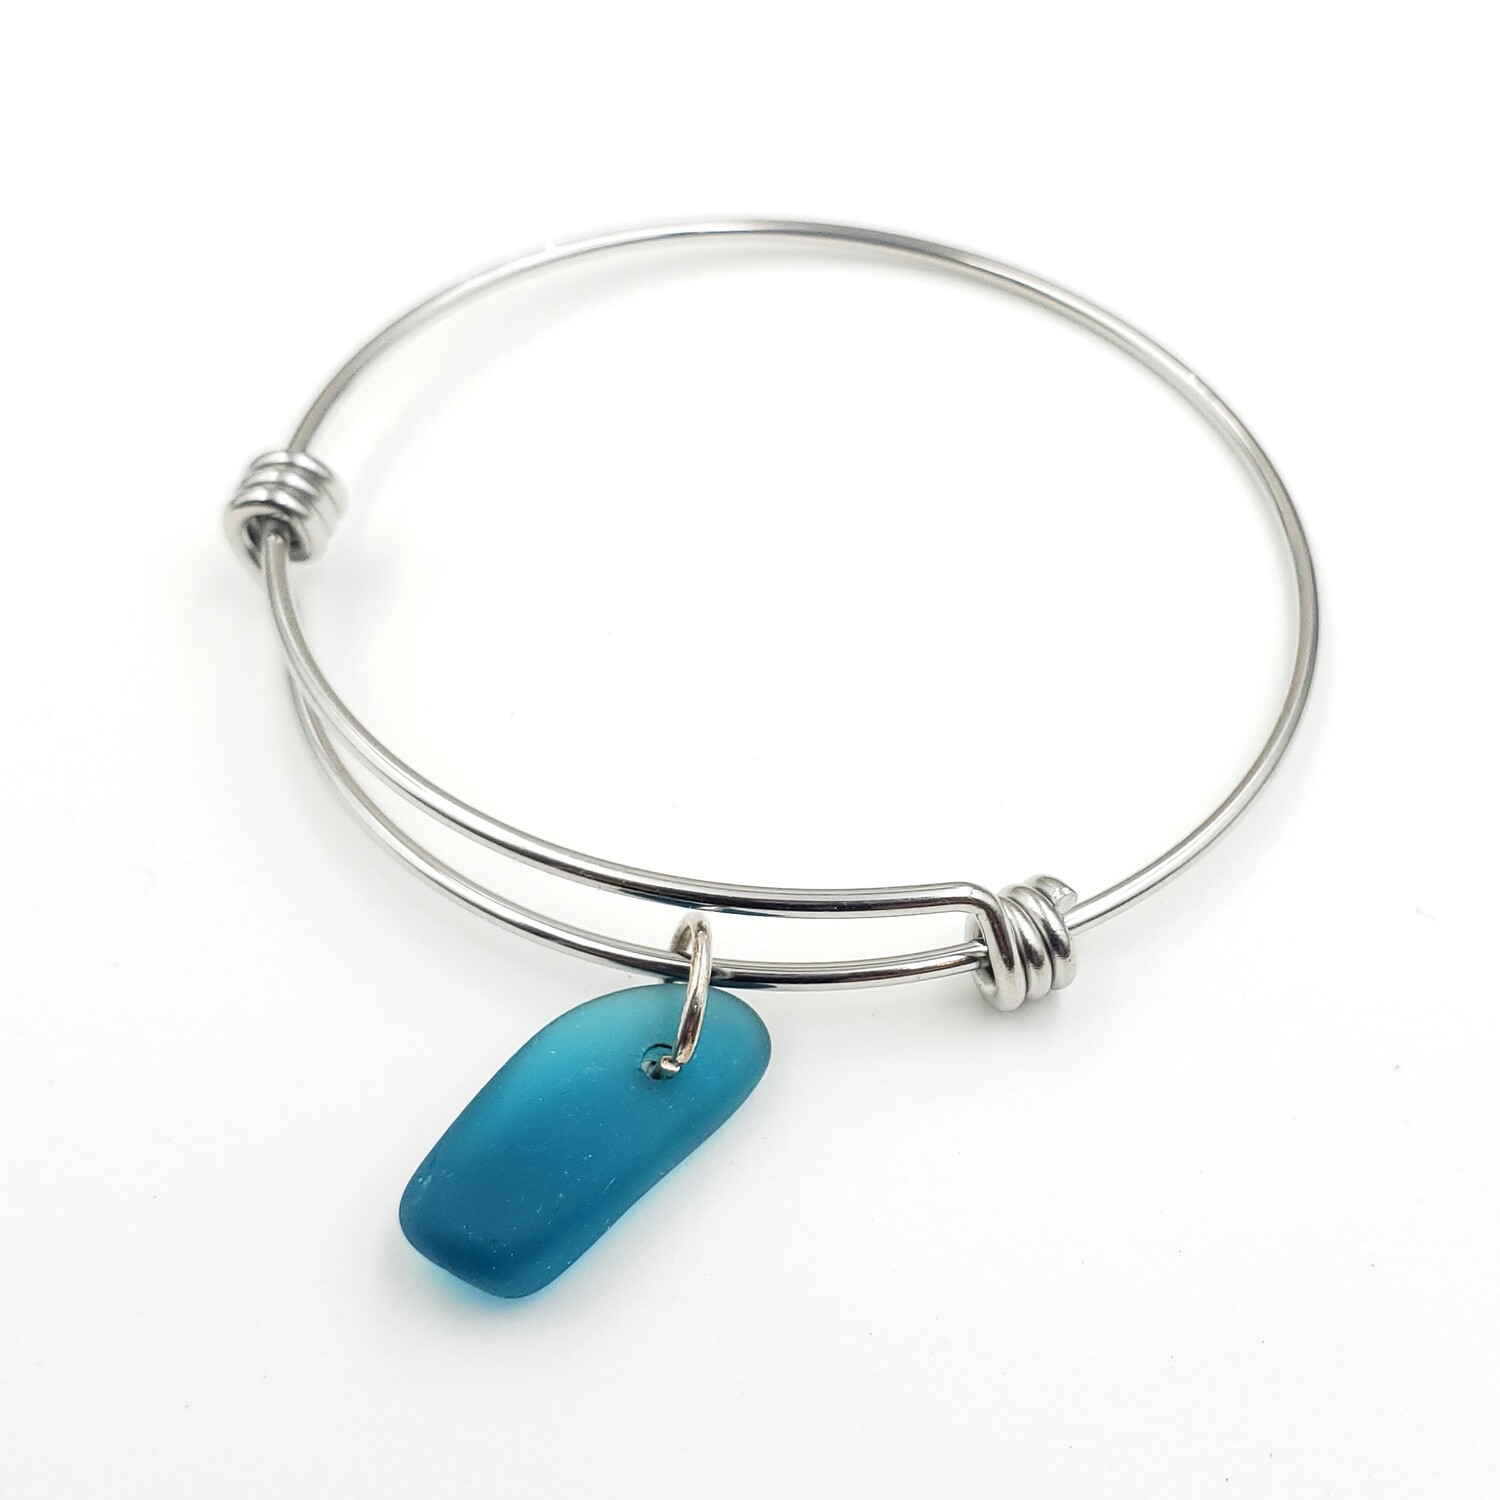 Bangle Bracelet with Teal Blue Maine Sea Glass